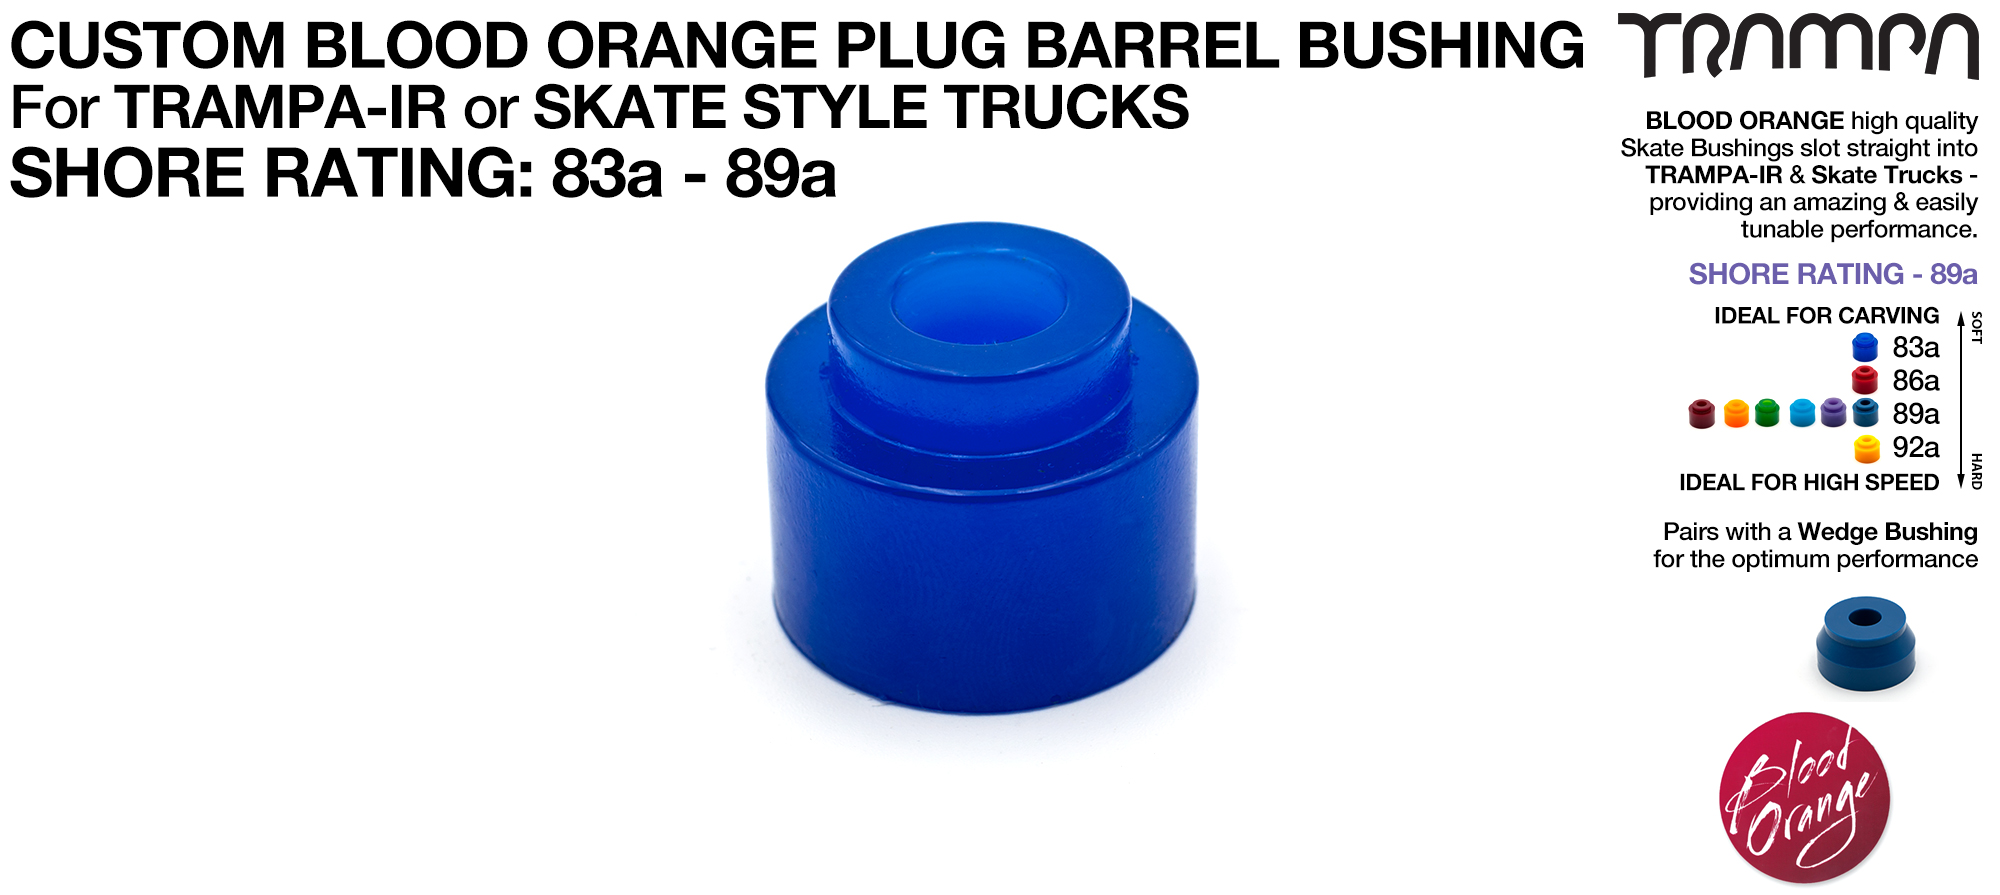 Custom Blood Orange PLUG BARREL Bushing - High Performance Urethane Bushings with lots of Flex options for customisation 